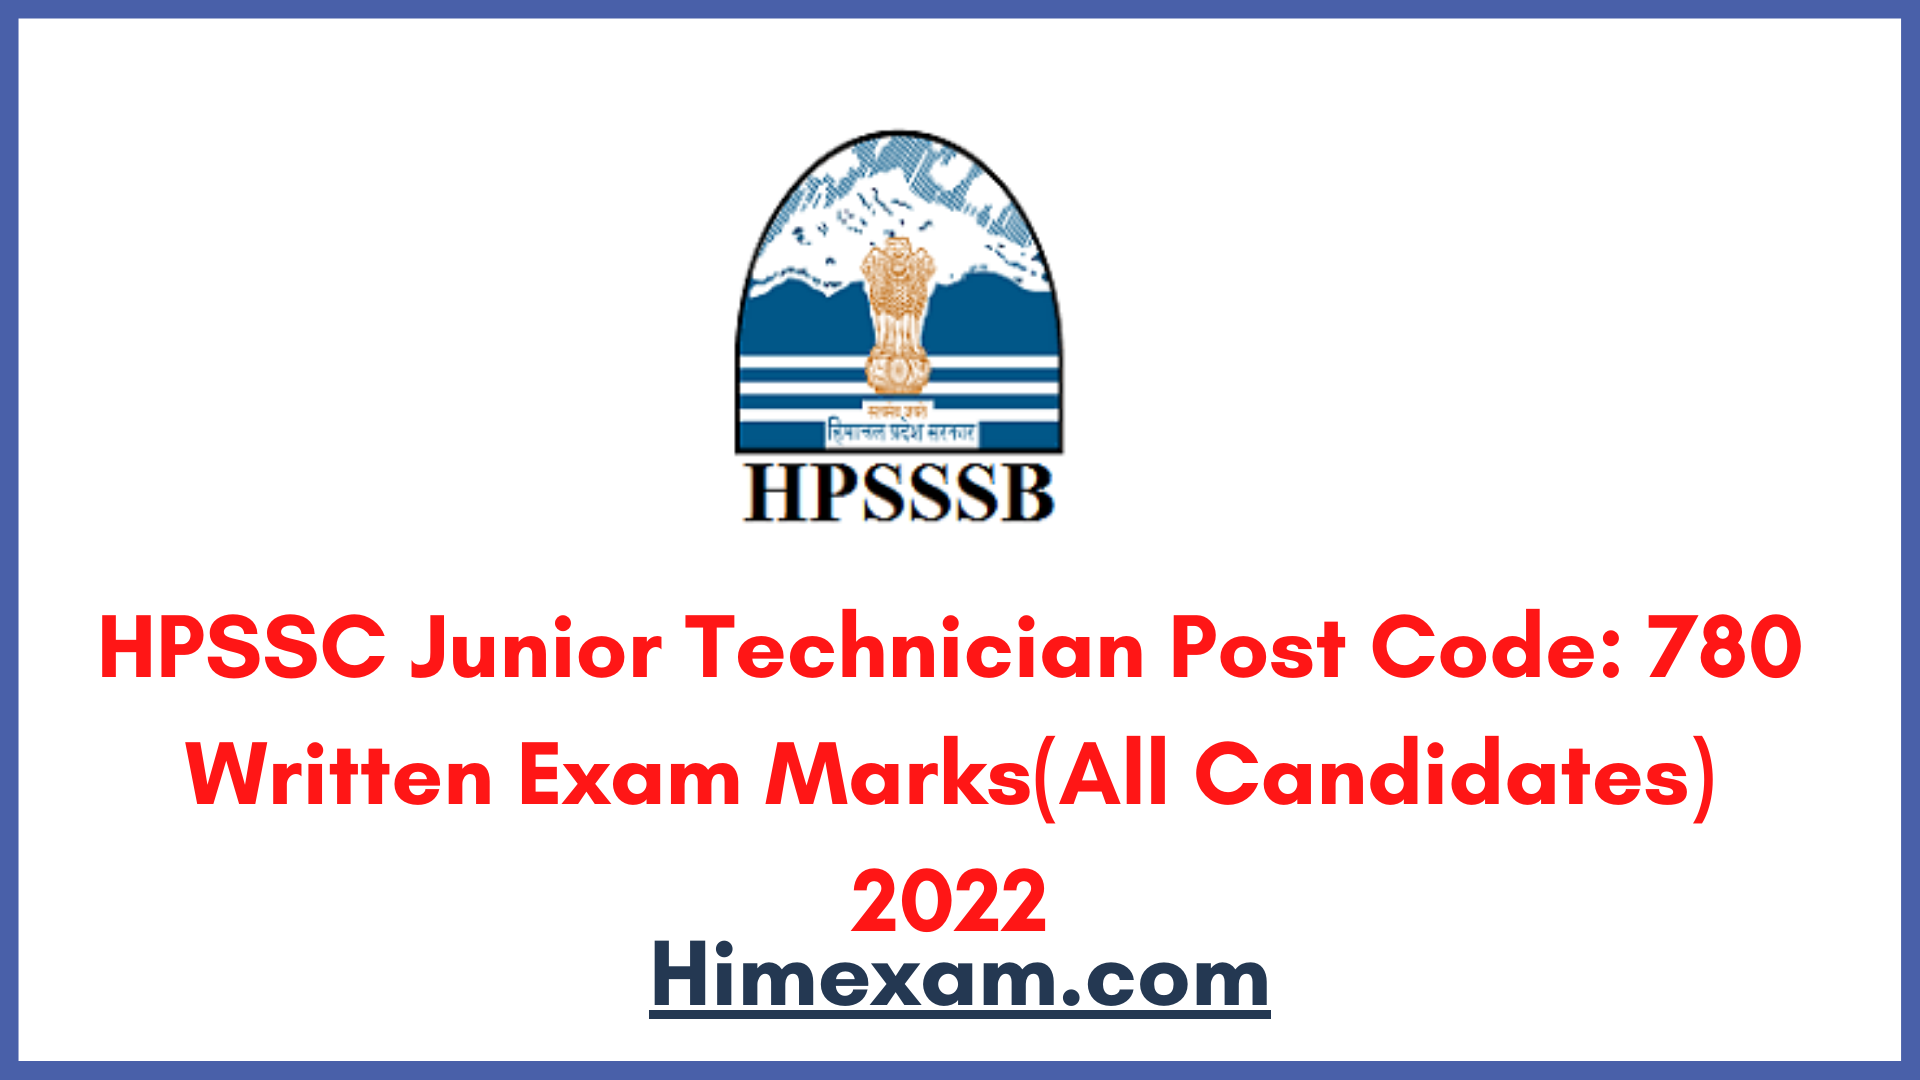 HPSSC Junior Technician Post Code: 780 Written Exam Marks(All Candidates) 2022